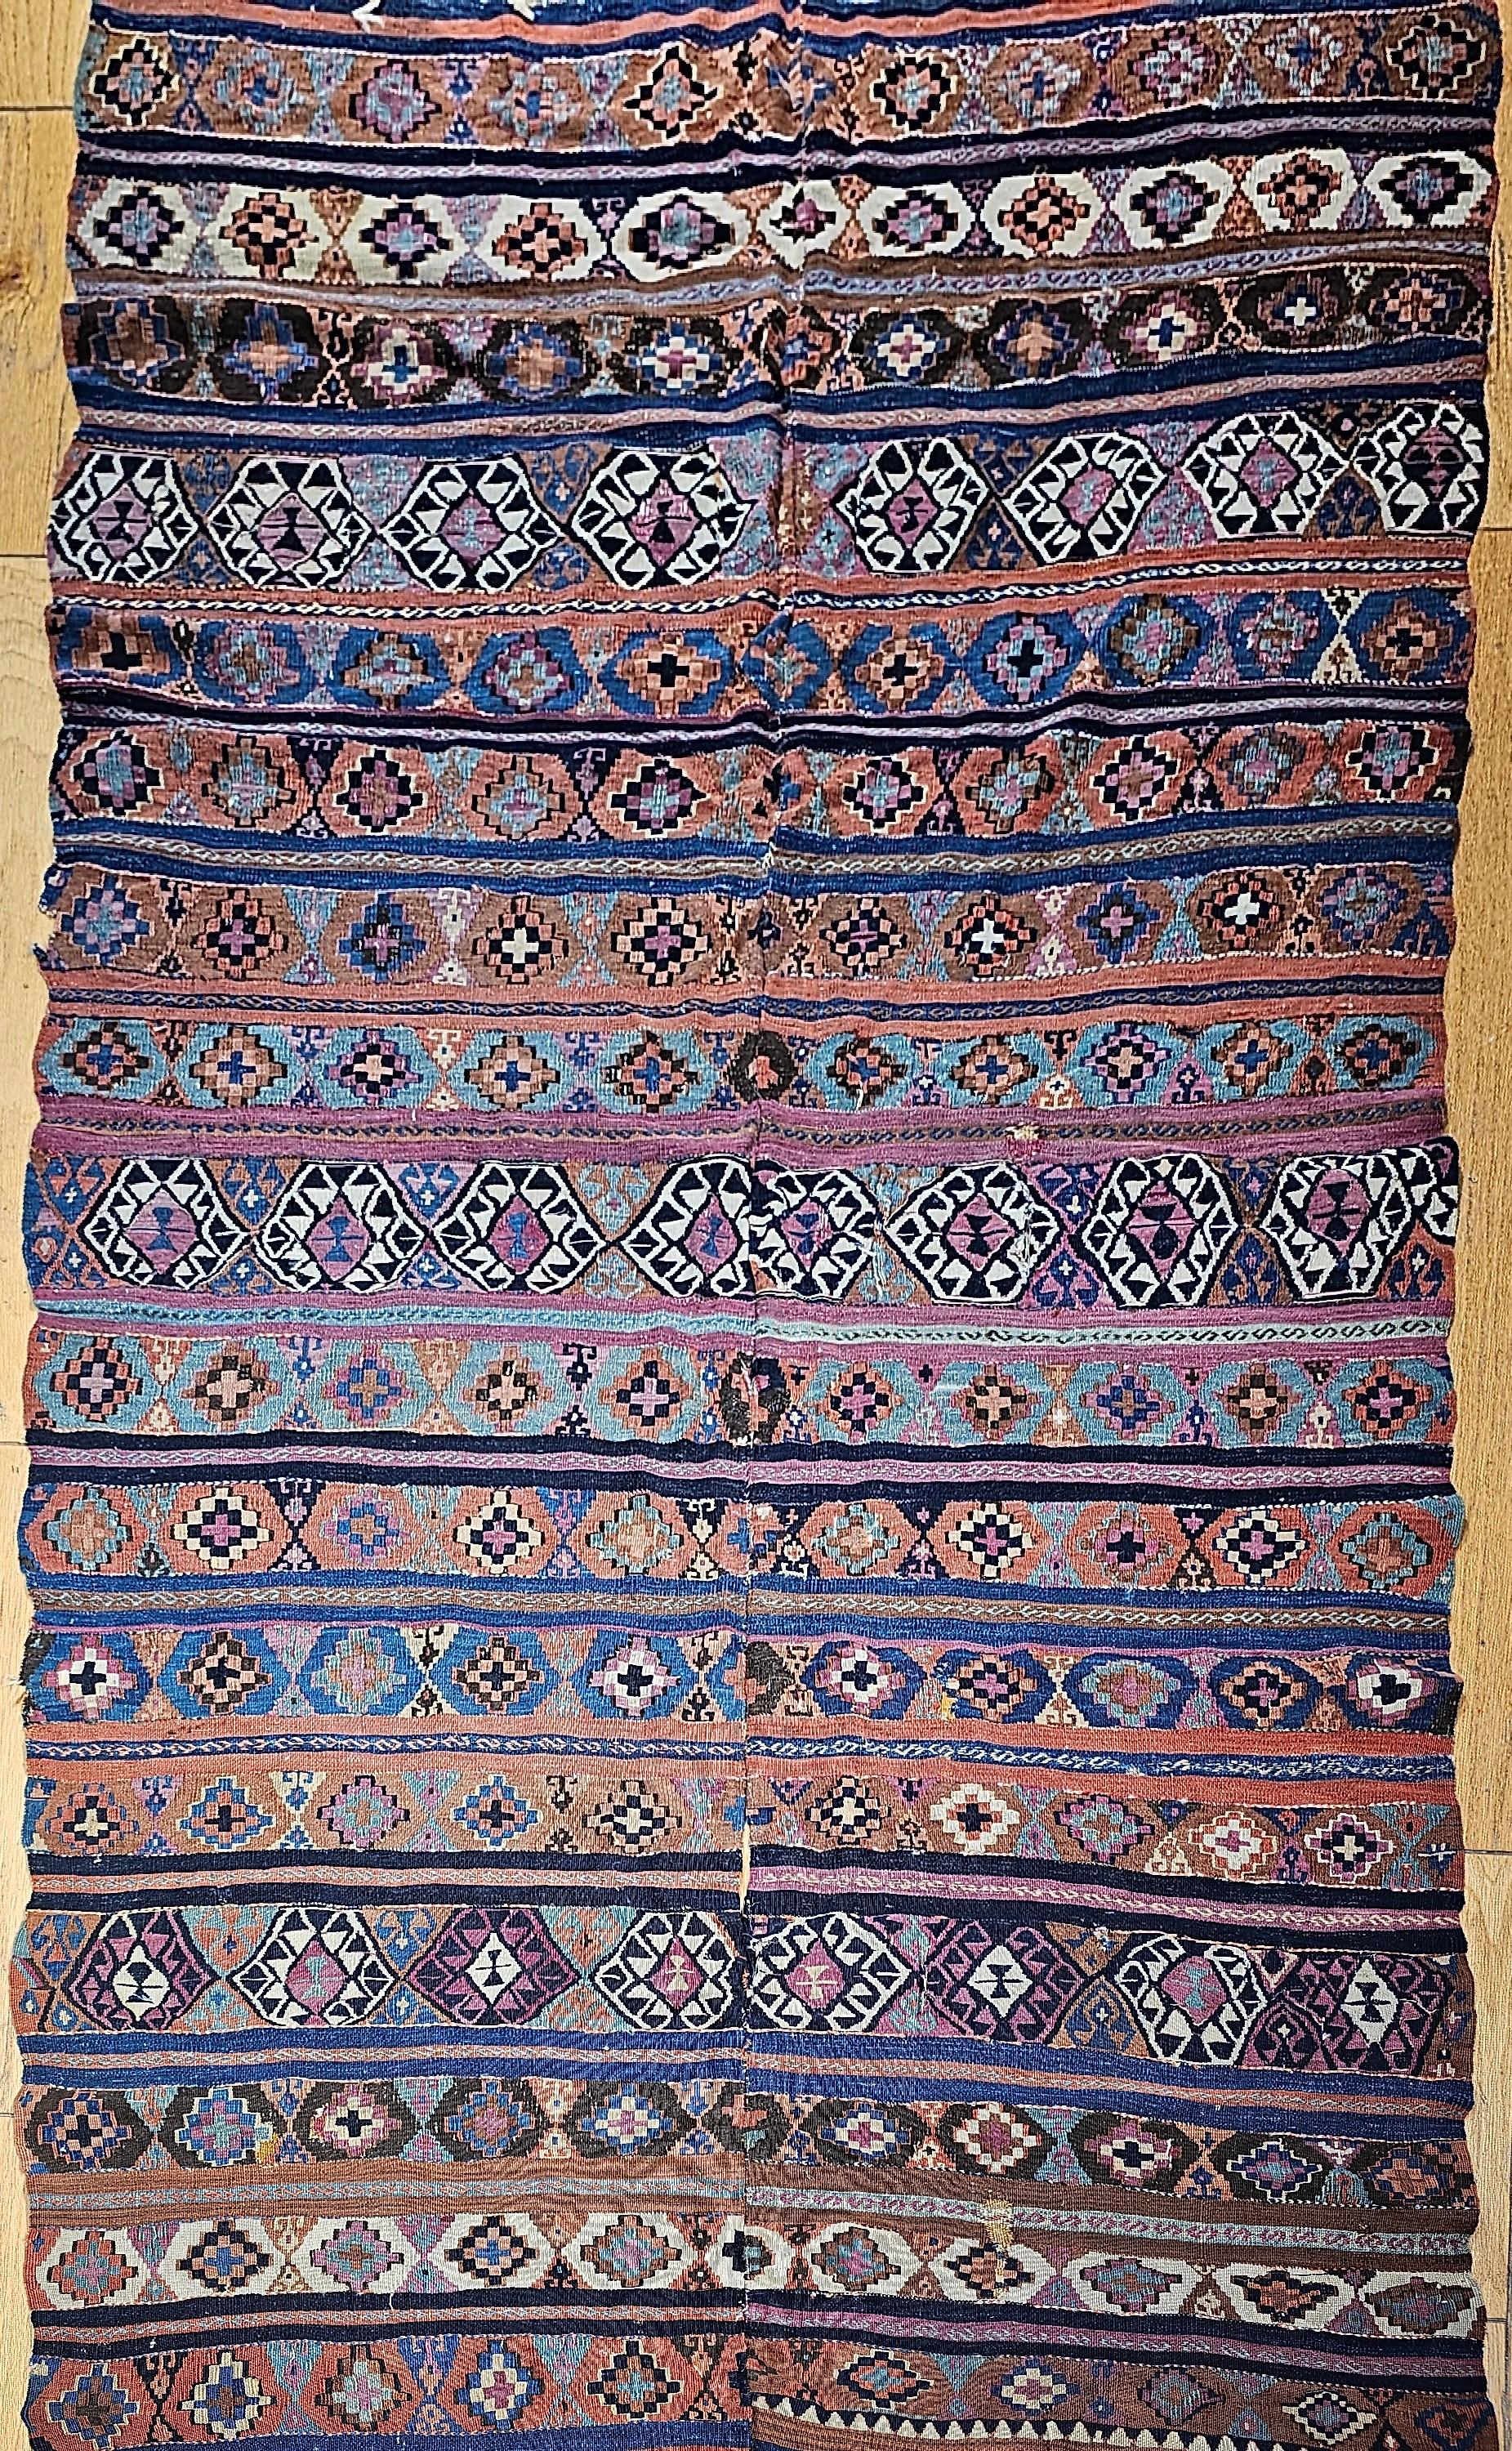  Kilim caucasien Shirvan du 19e siècle en turquoise, violet, bleu et ivoire. Les kilims étant des tissages plats de type tapisserie (sans poils), il est extrêmement rare d'en trouver un qui ait plus de 125 ans et qui soit en aussi bon état. Les